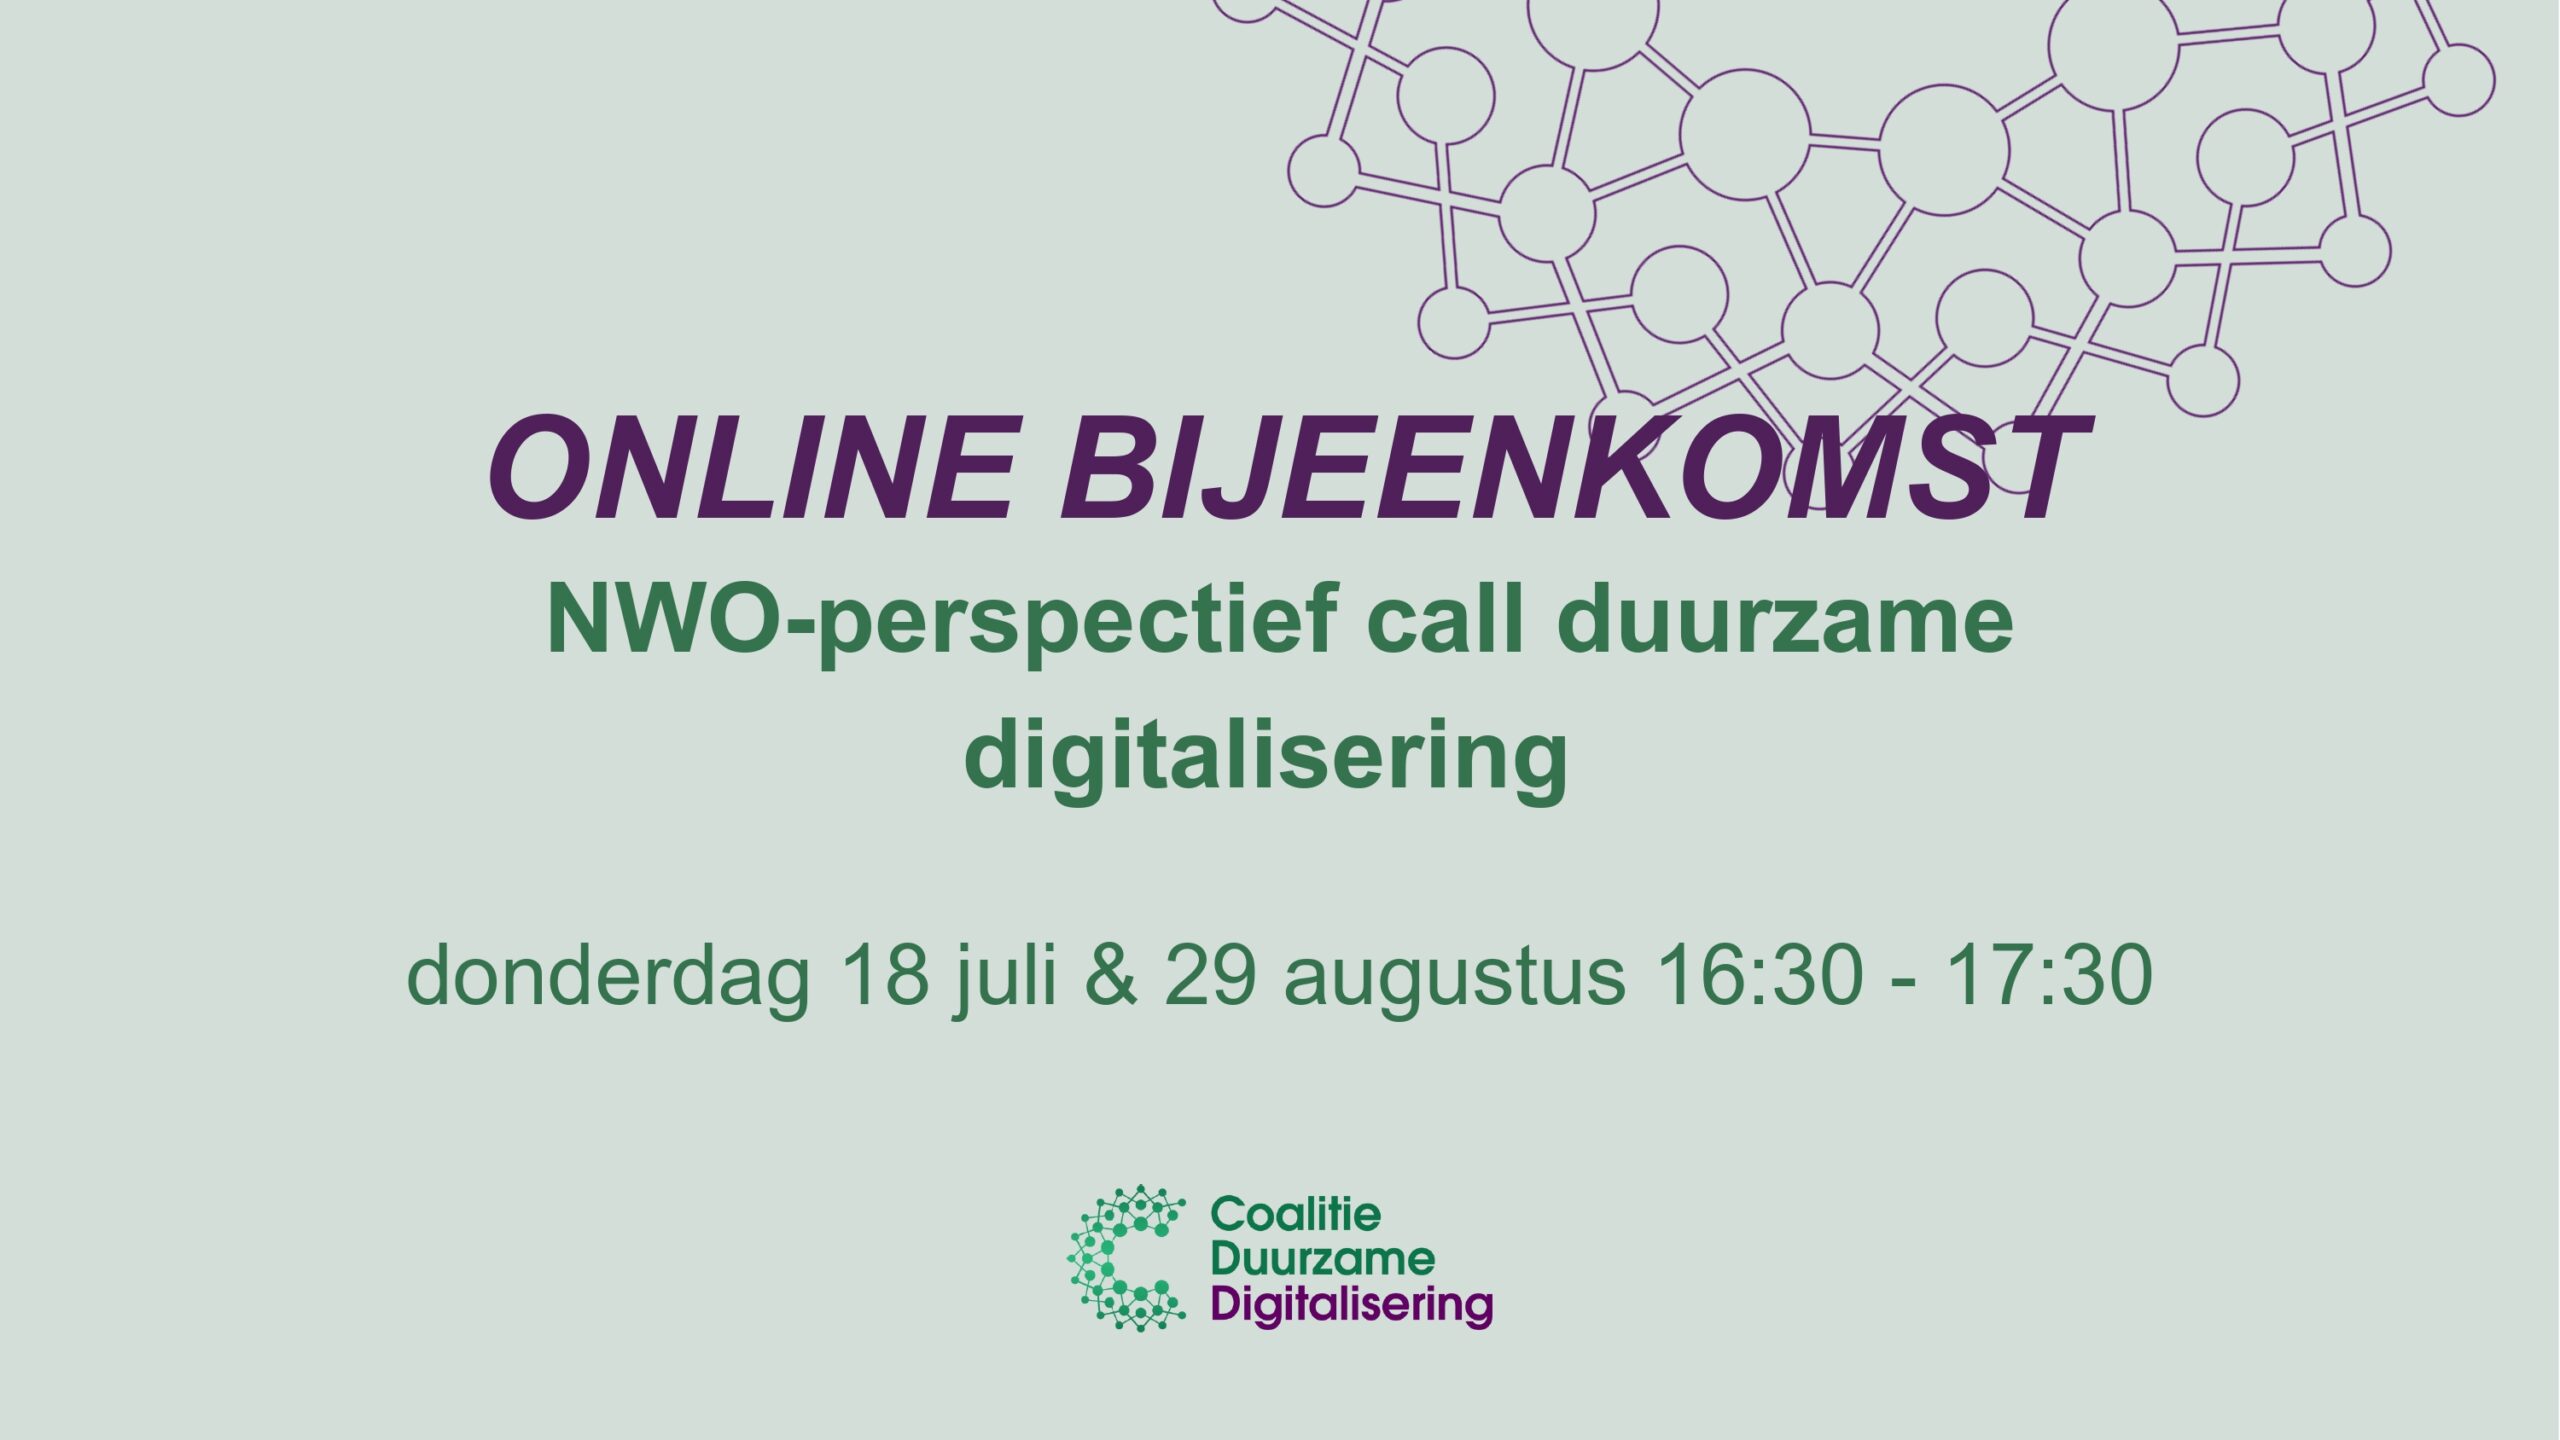 Online bijeenkomst NWO-perspectief call duurzame digitalisering, deel één